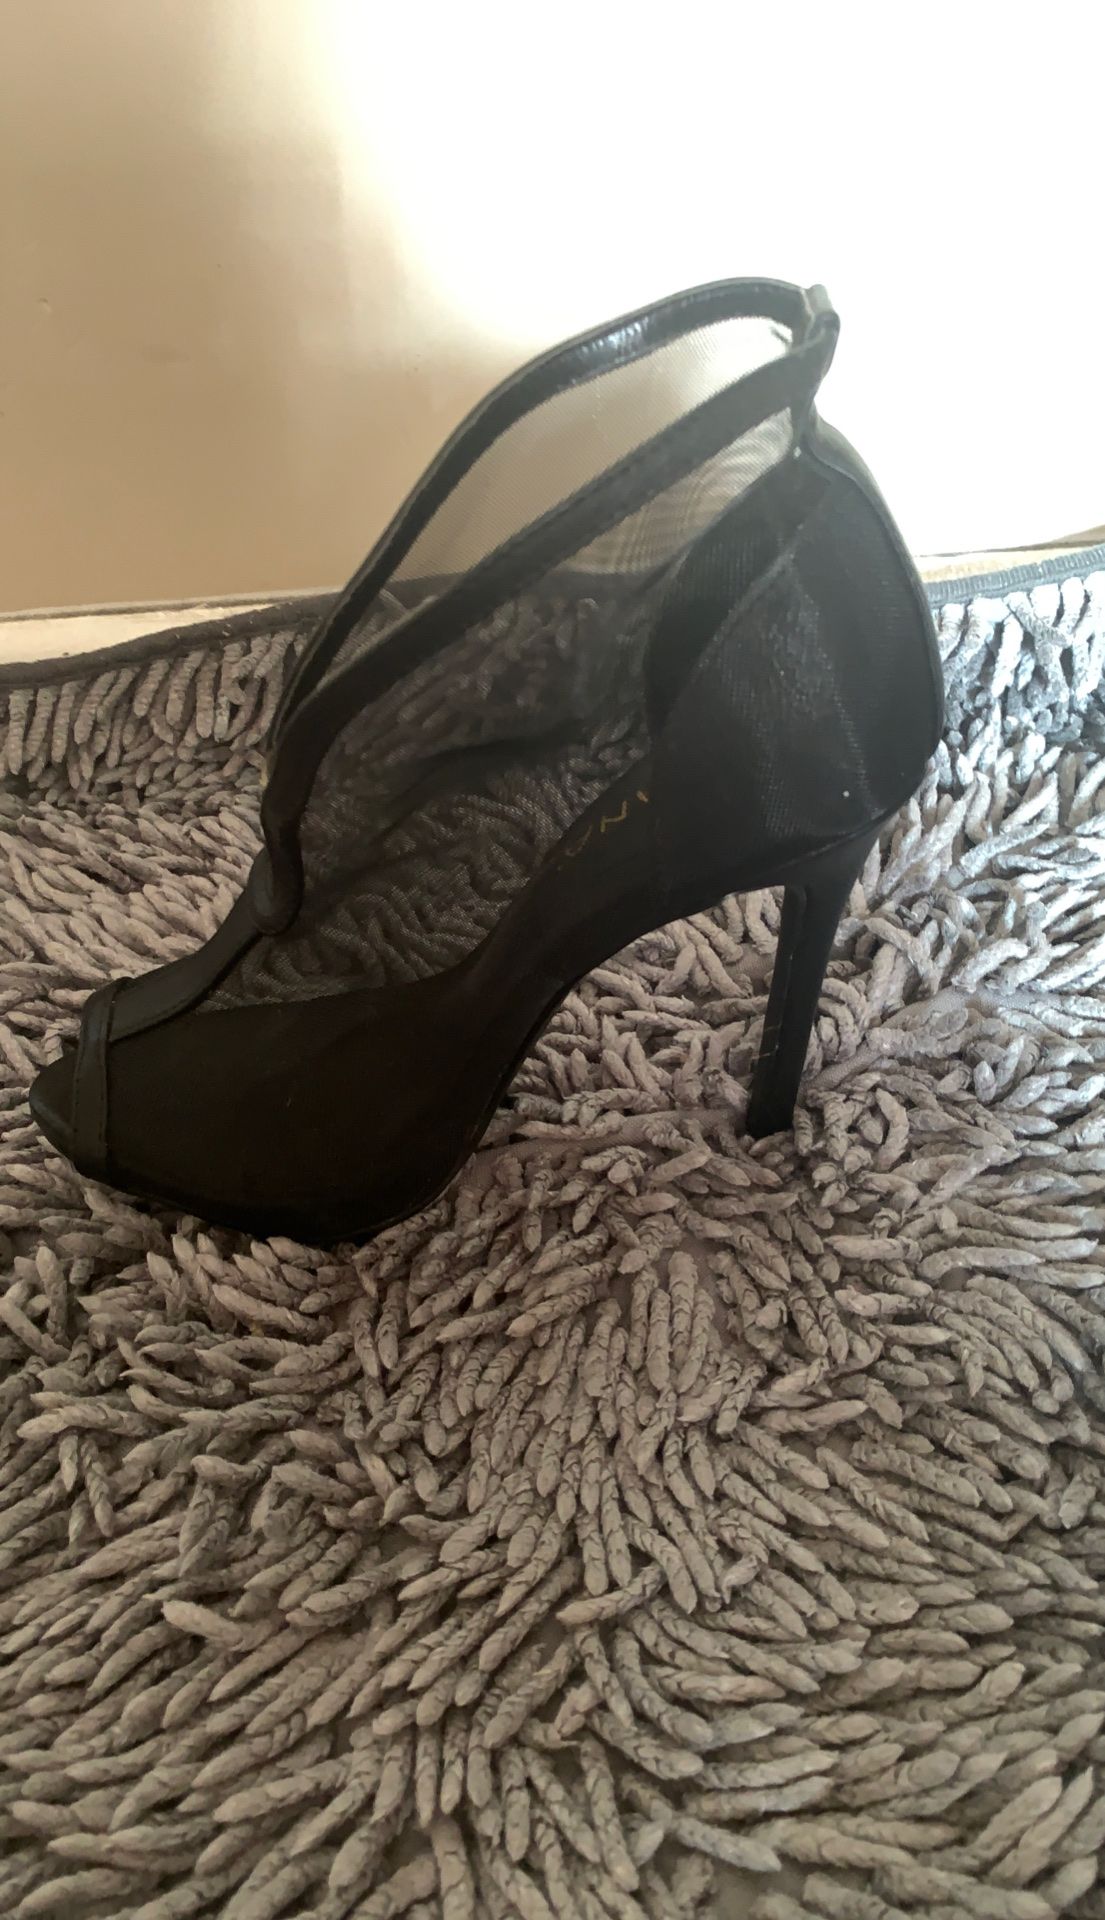 Size 5 1/2 woman’s black heels